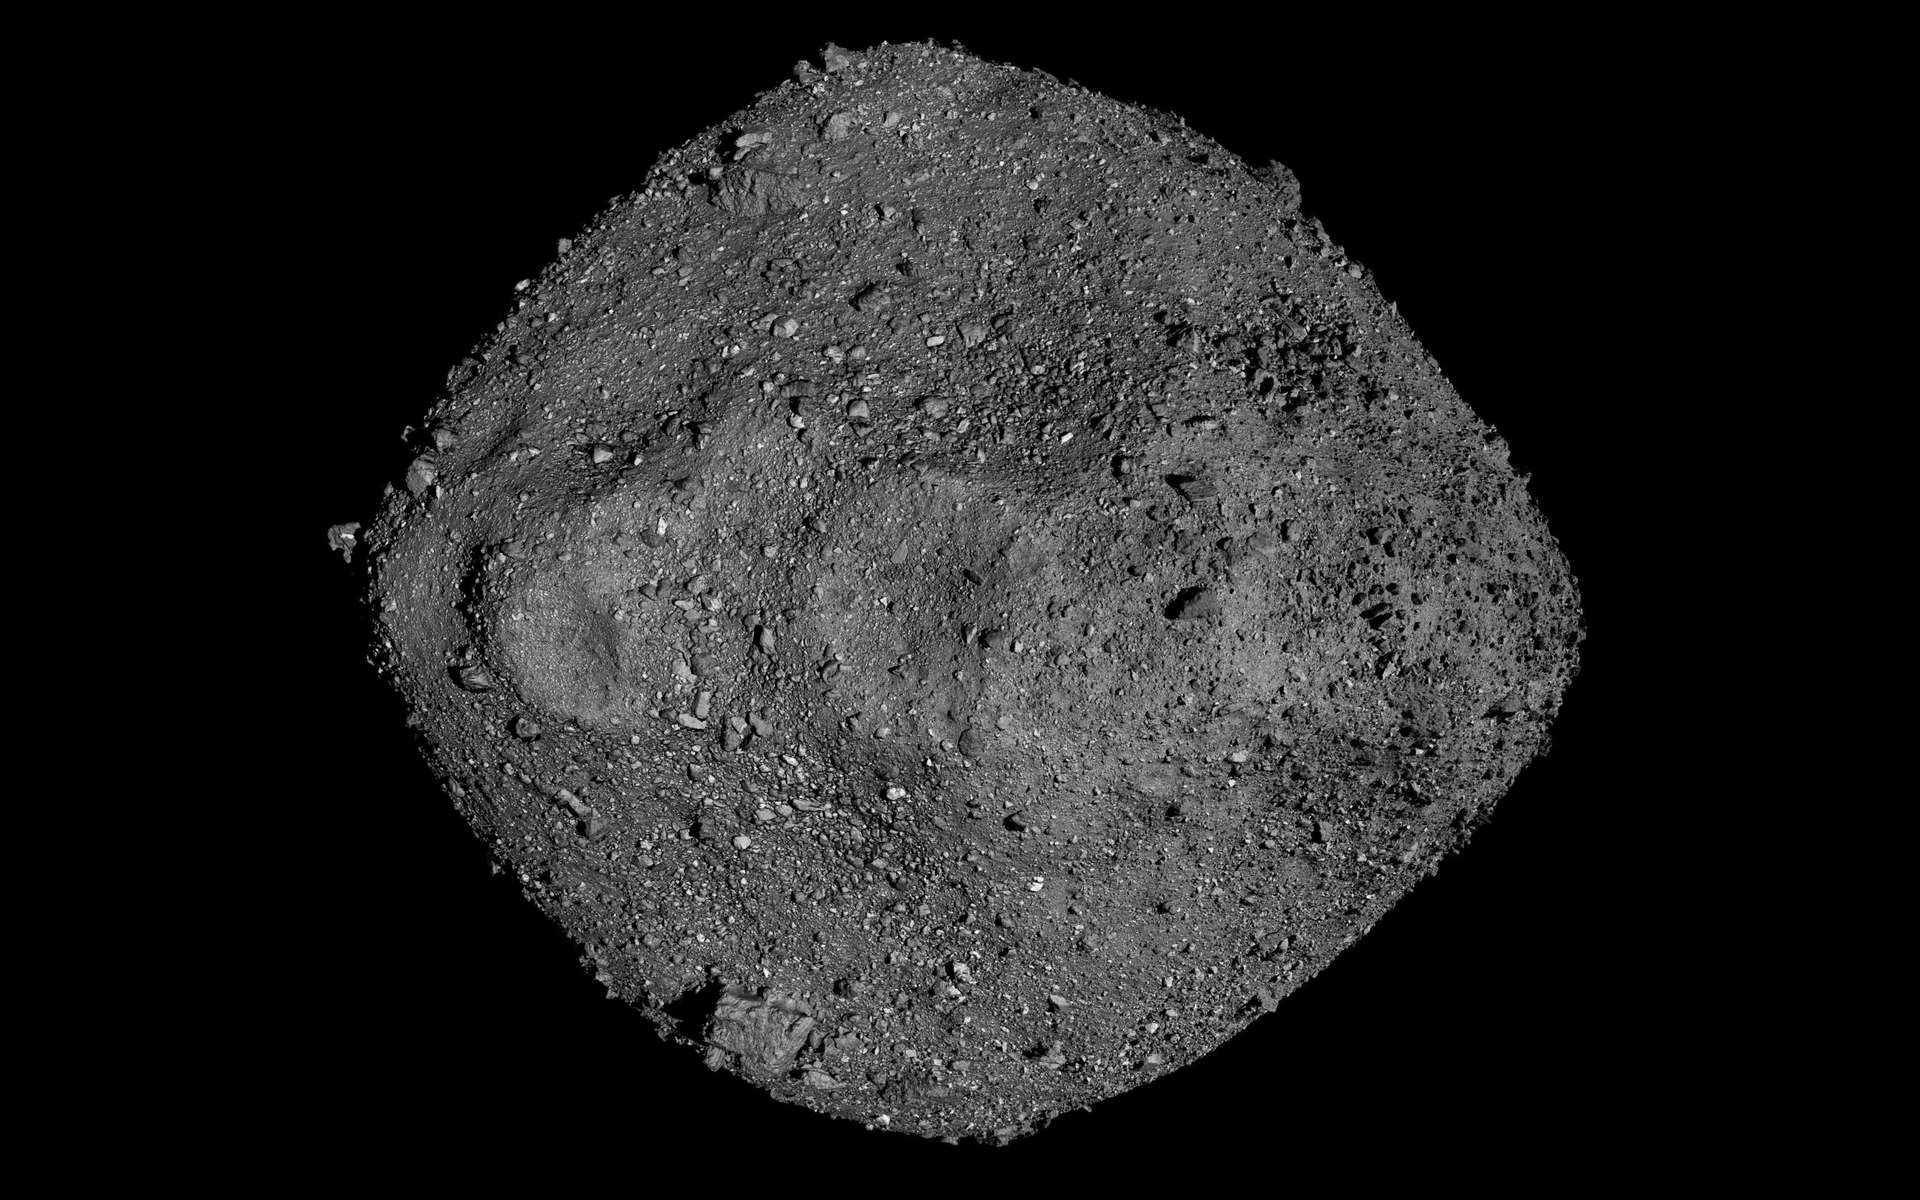 La sonde Osiris-Rex aurait pu passer à travers l'astéroïde Bennu lors de son contact avec la surface